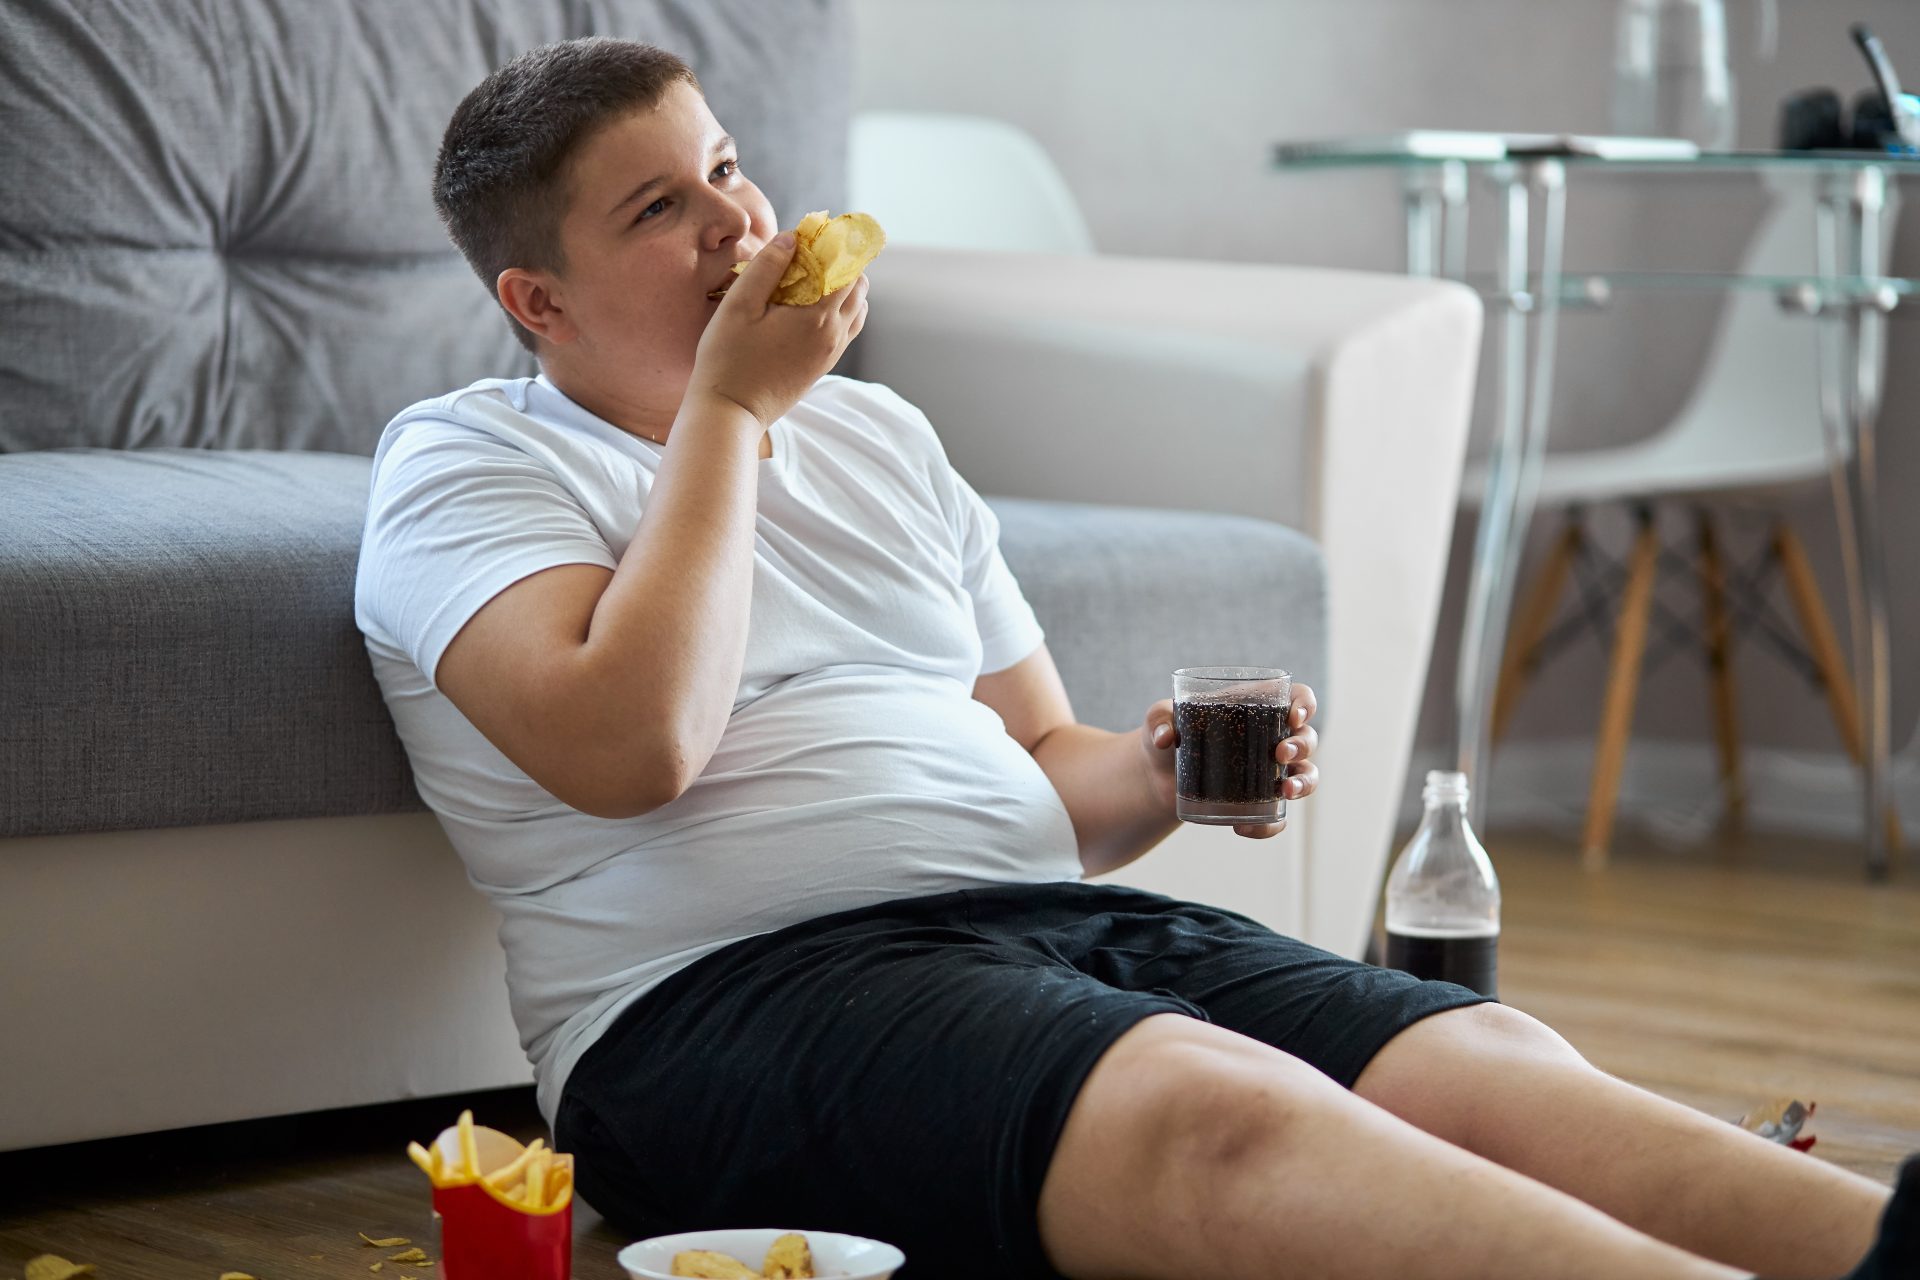 Obésité infantile double le risque de sclérose en plaques